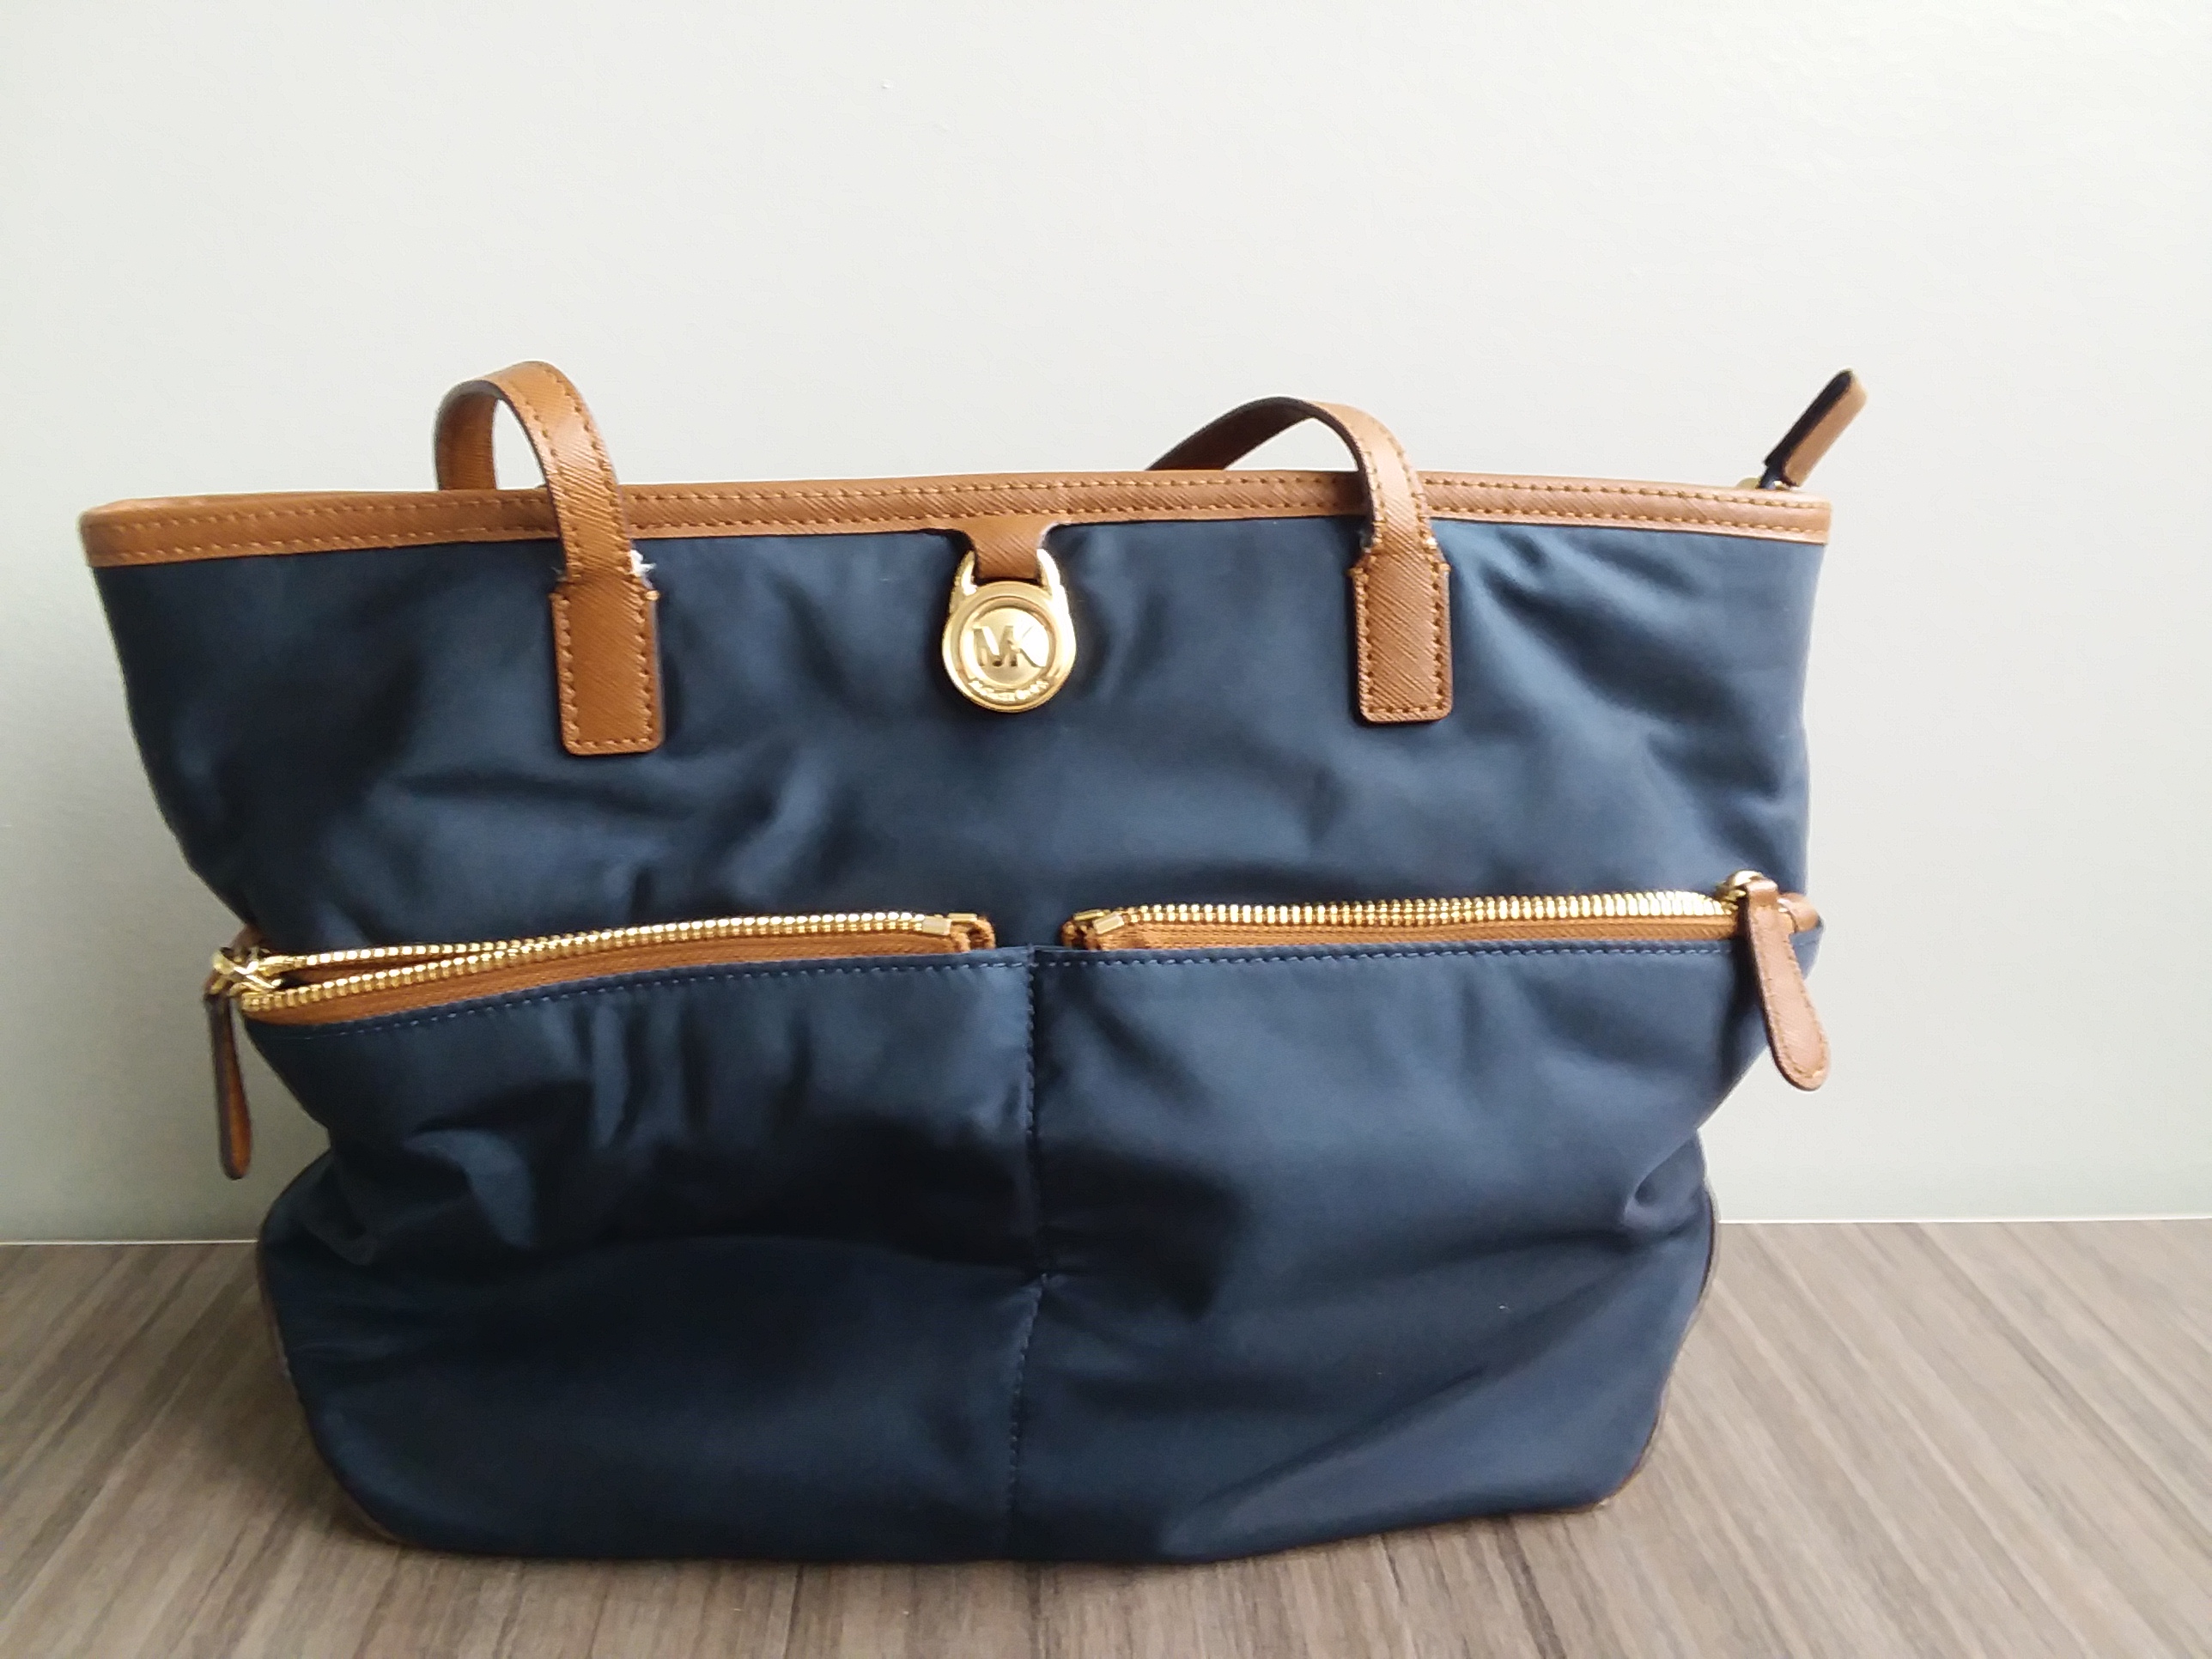 MICHAEL KORS Kempton Medium Nylon Pocket Tote Bag | eBay